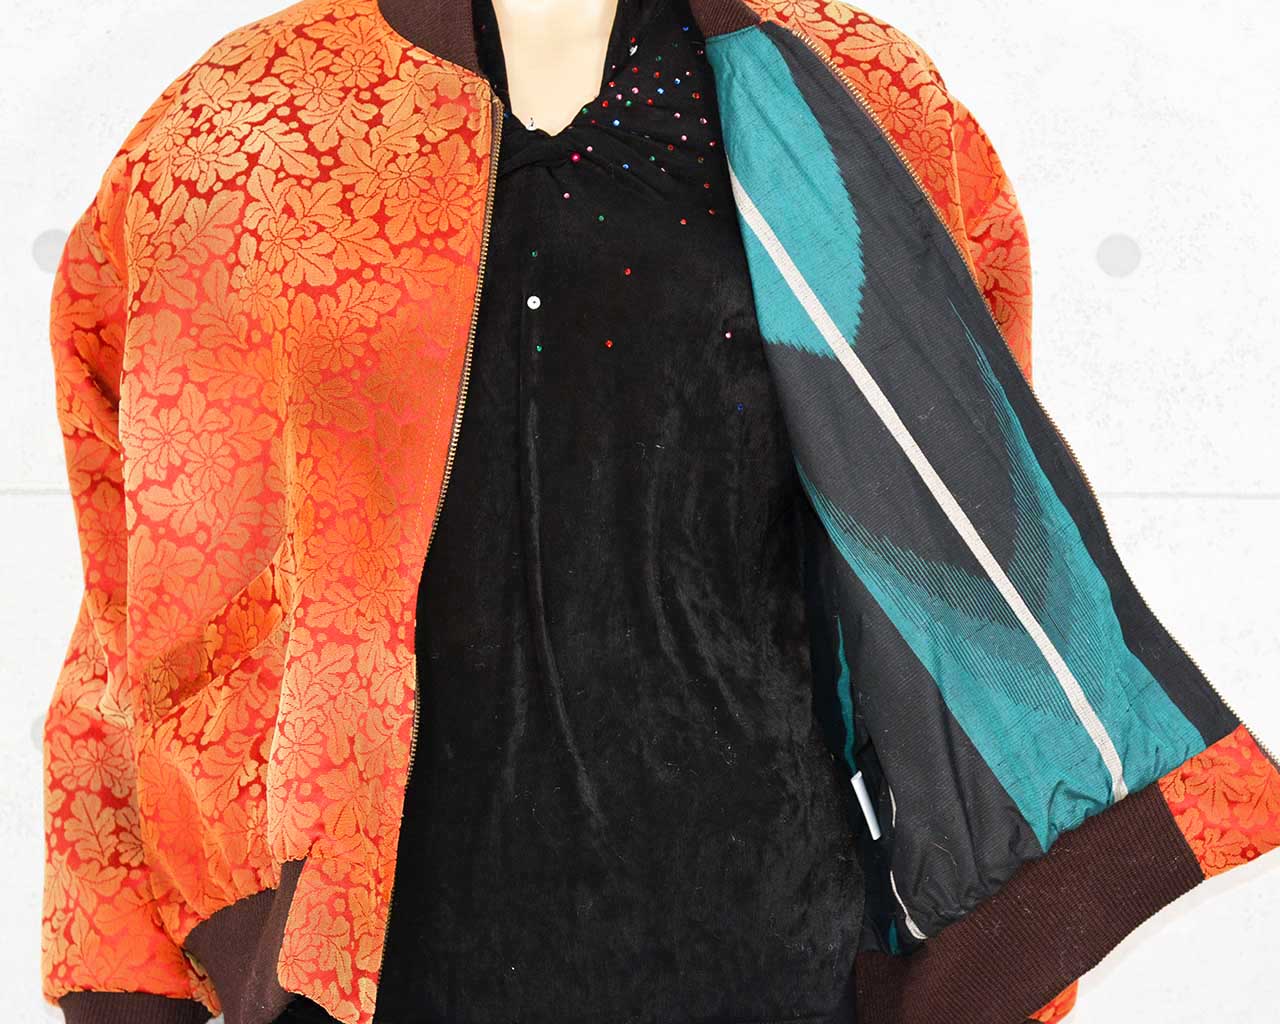 Remake jacket of velvet woven fabric